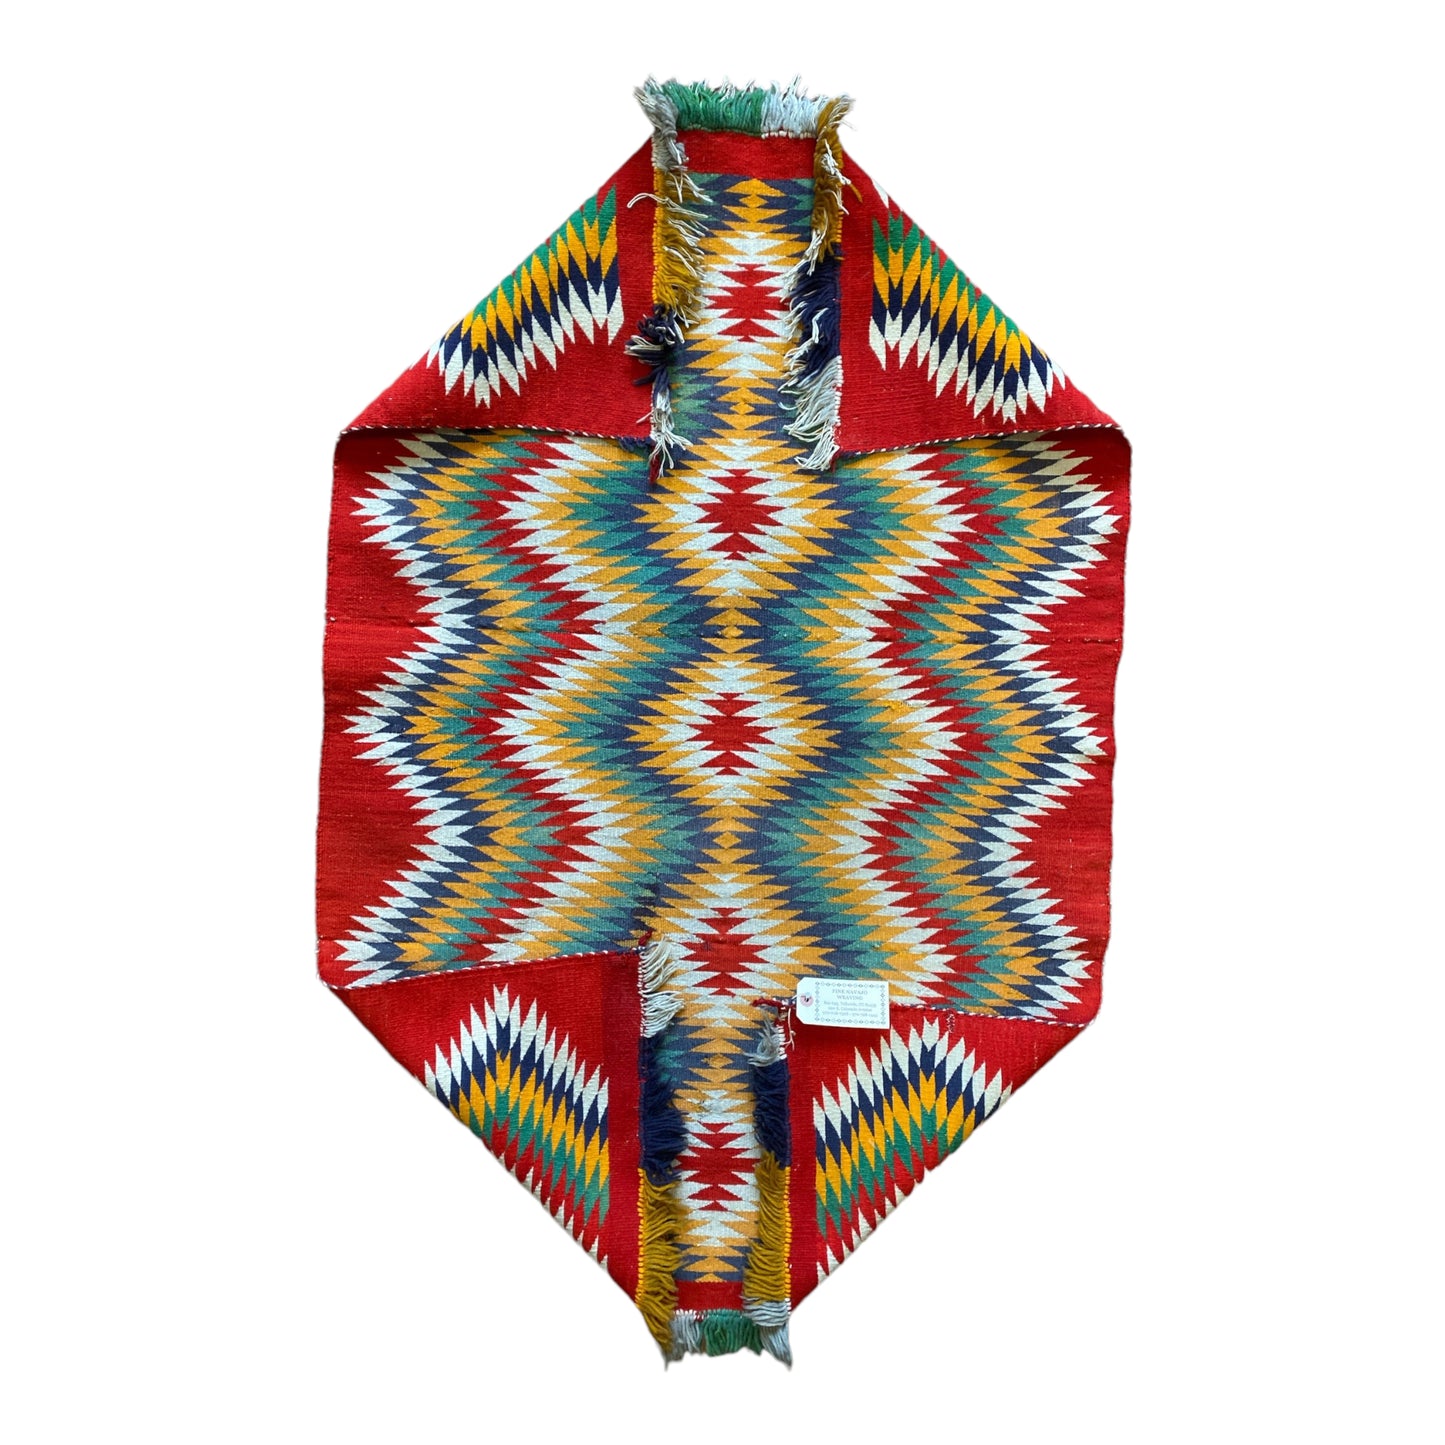 Antique Germantown Eye Dazzler Navajo Weaving, navajo rug for sale, authentic navajo weaving, telluride furnishings, telluride art gallery